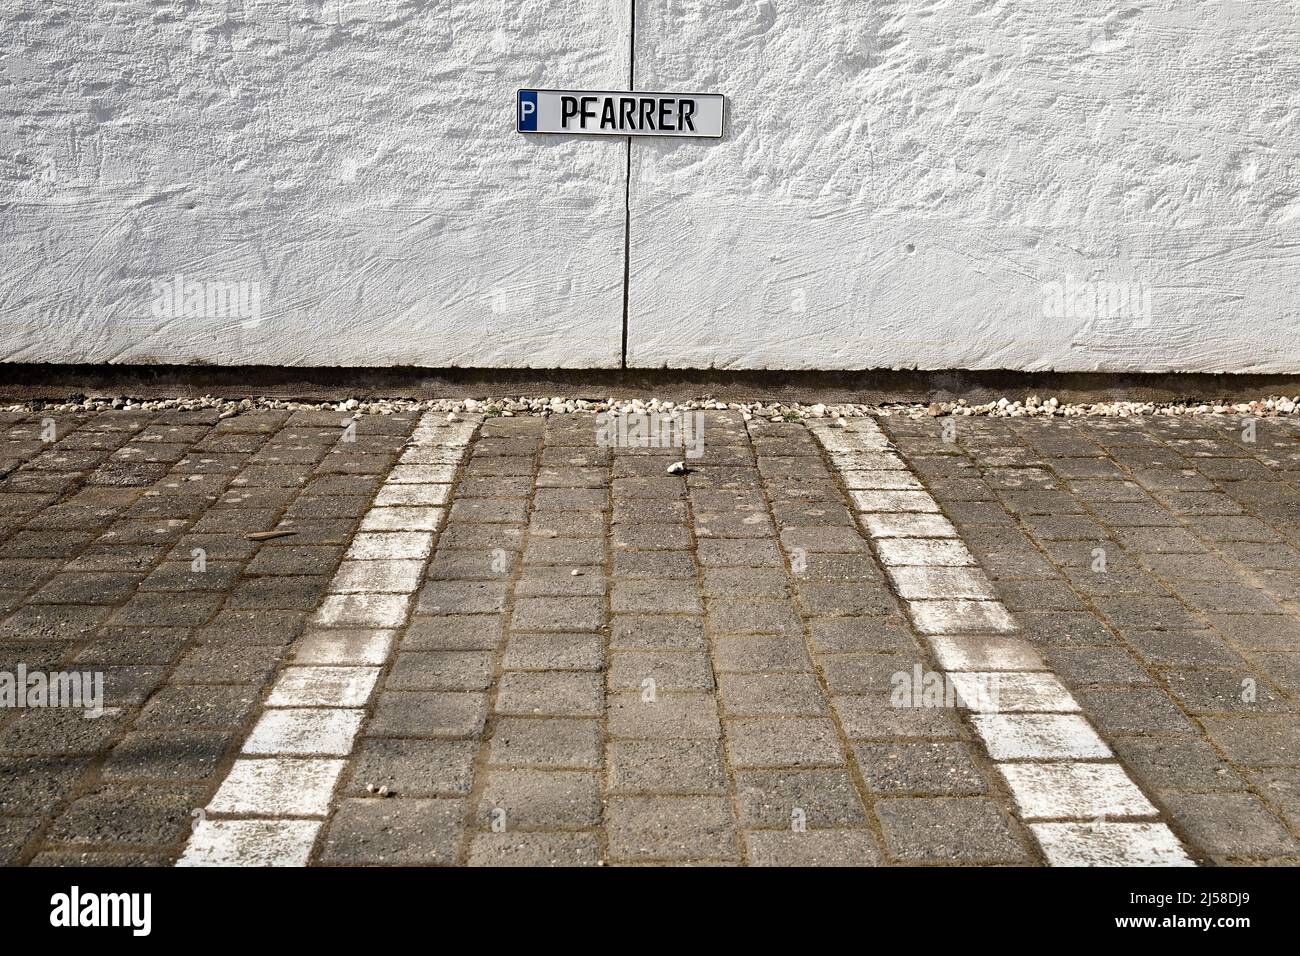 Leerer Pfarrerparkplatz, Symbolfoto fuer fehlenden Pfarrer in der Gemeinde, Odenthal, Bergisches Land, Nordrhein-Westfalen, Deutschland Stock Photo